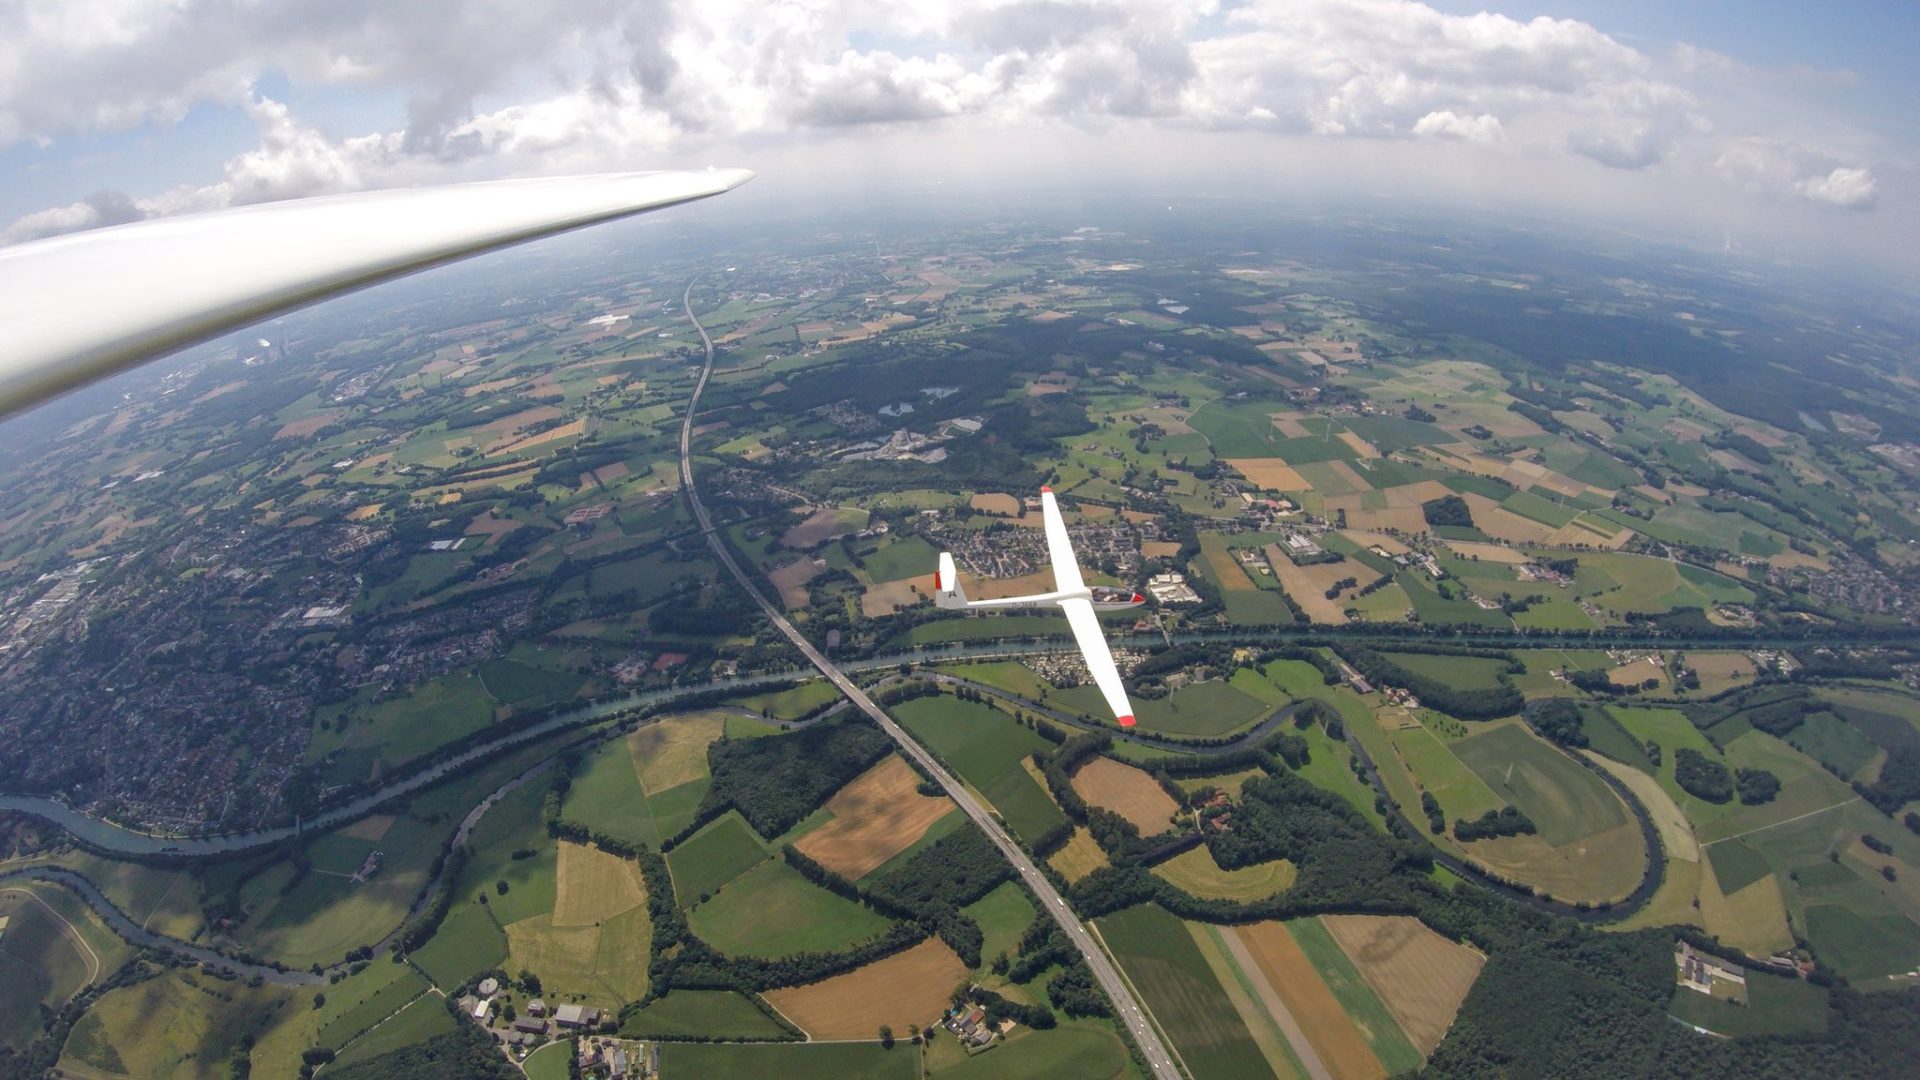 Tag des Luftsports am Sonntag, dem 25. August – Rundflüge und Infos am Segelflugplatz Dorsten